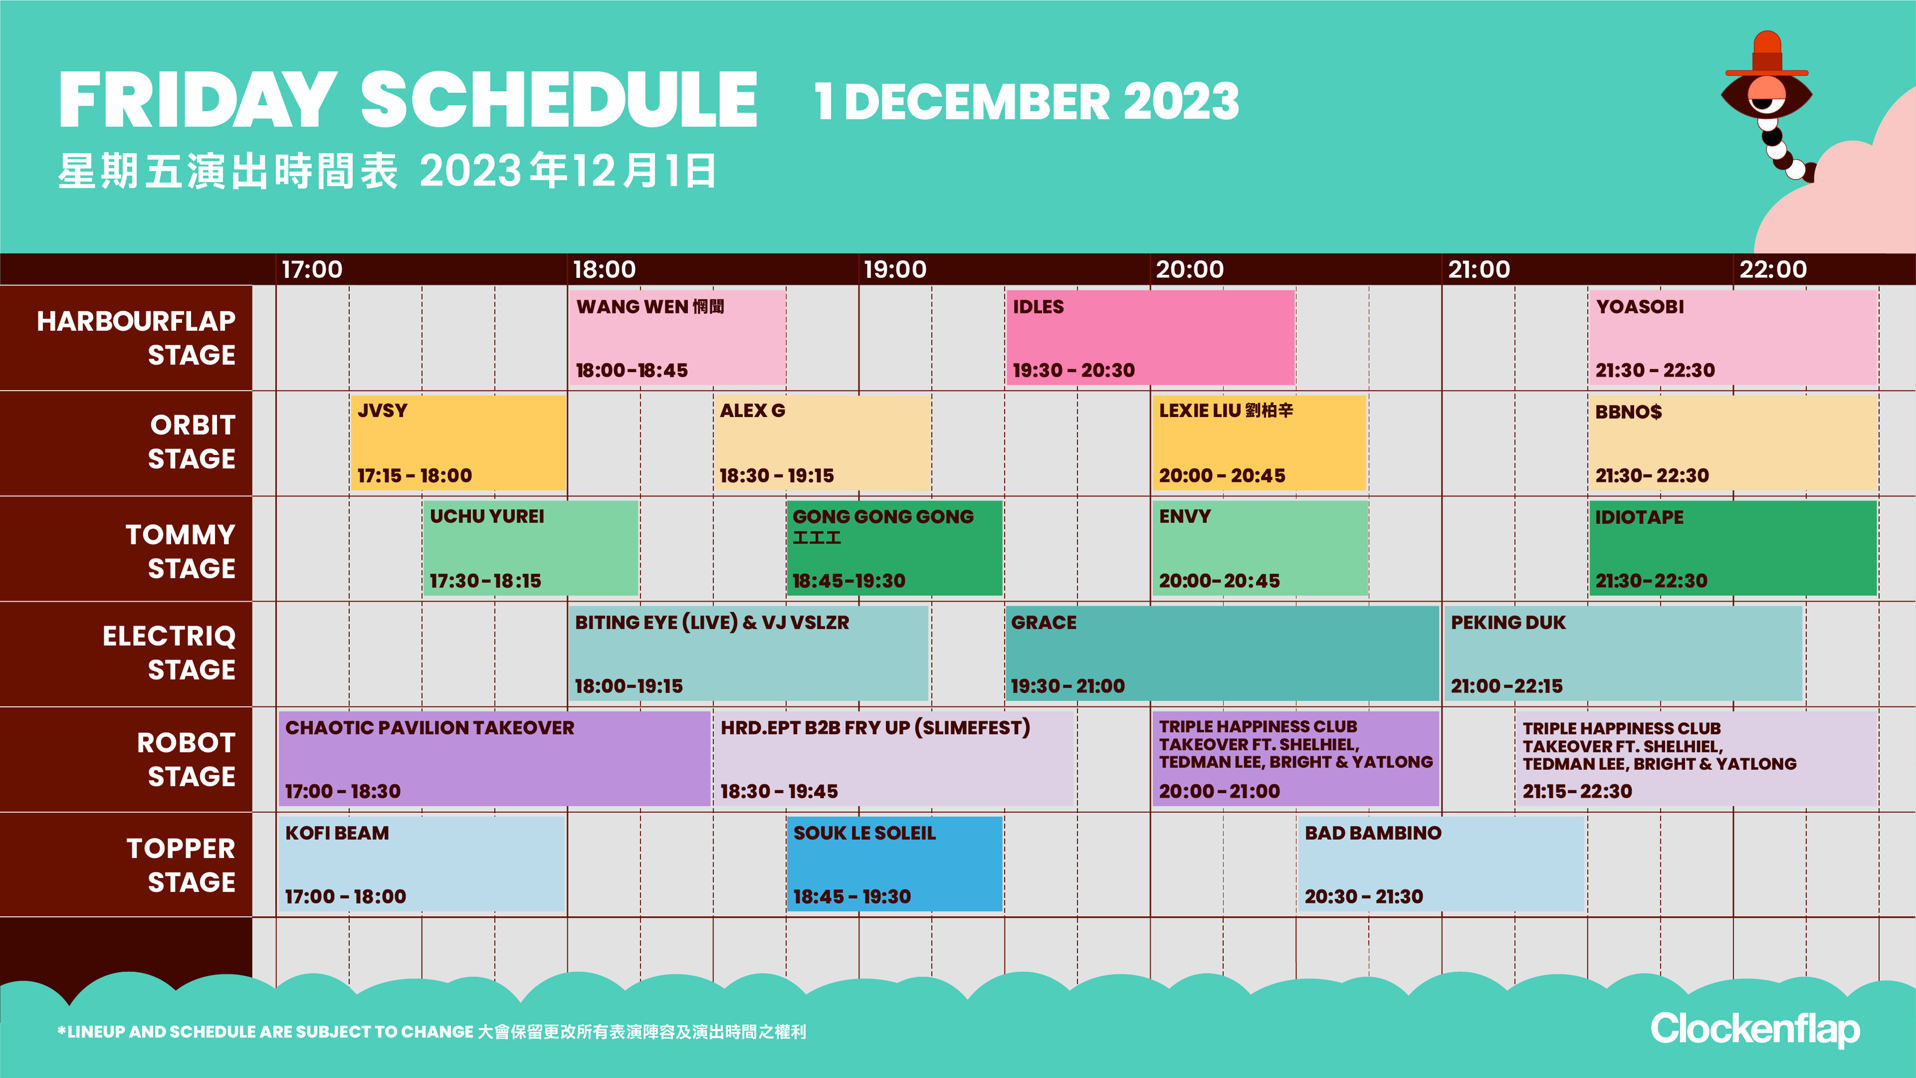 friday schedule clockenflap december 2023